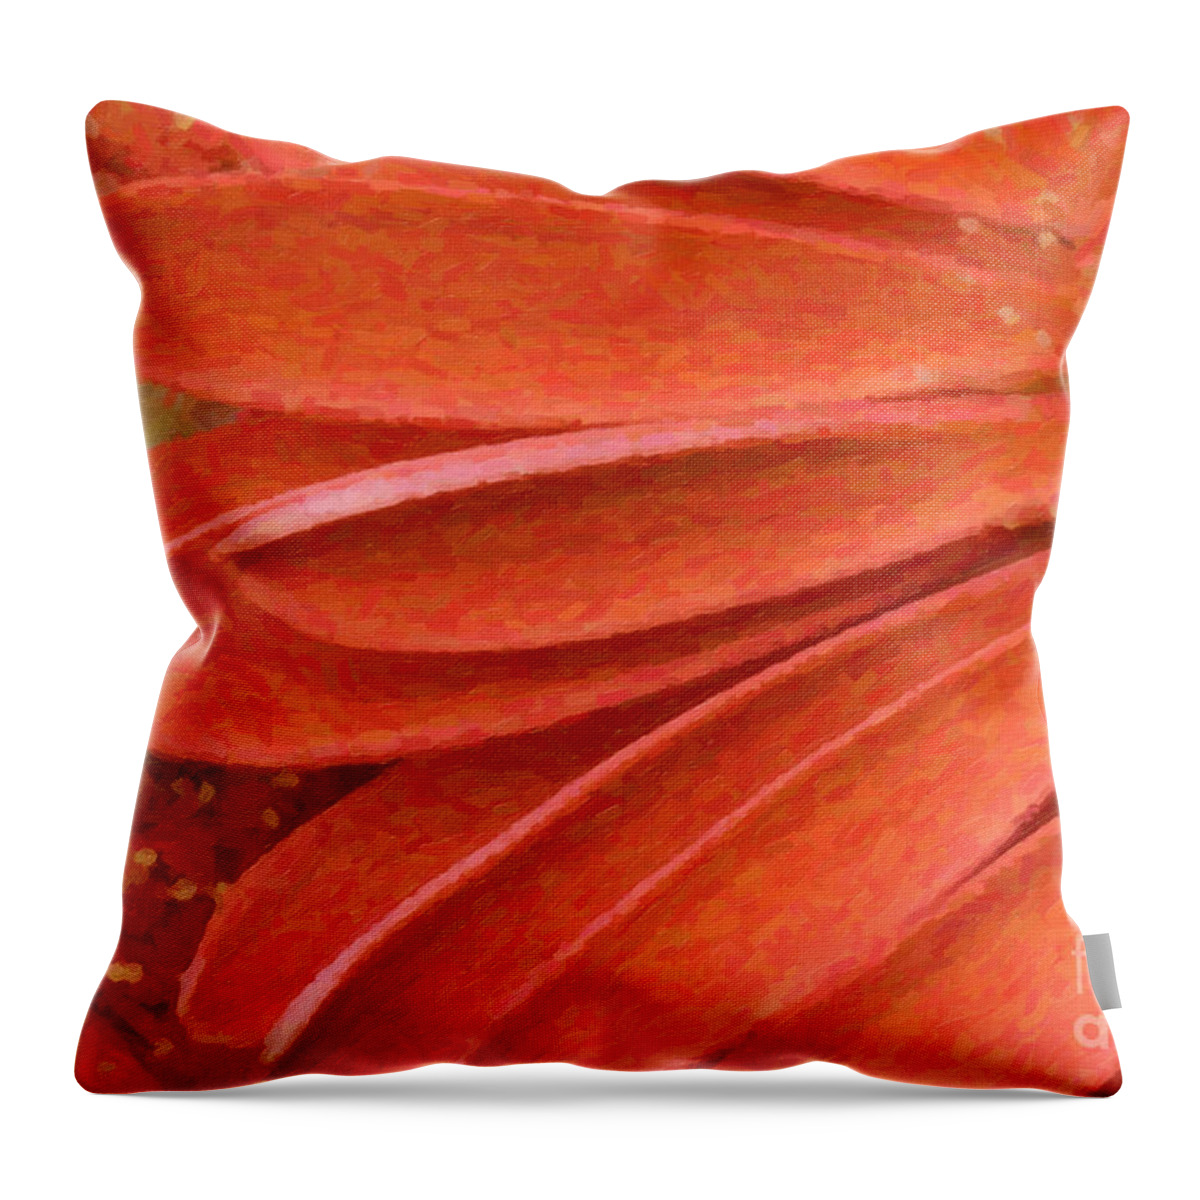 Gerber Throw Pillow featuring the digital art Orange Gerber Daisy Painting by Jill Lang